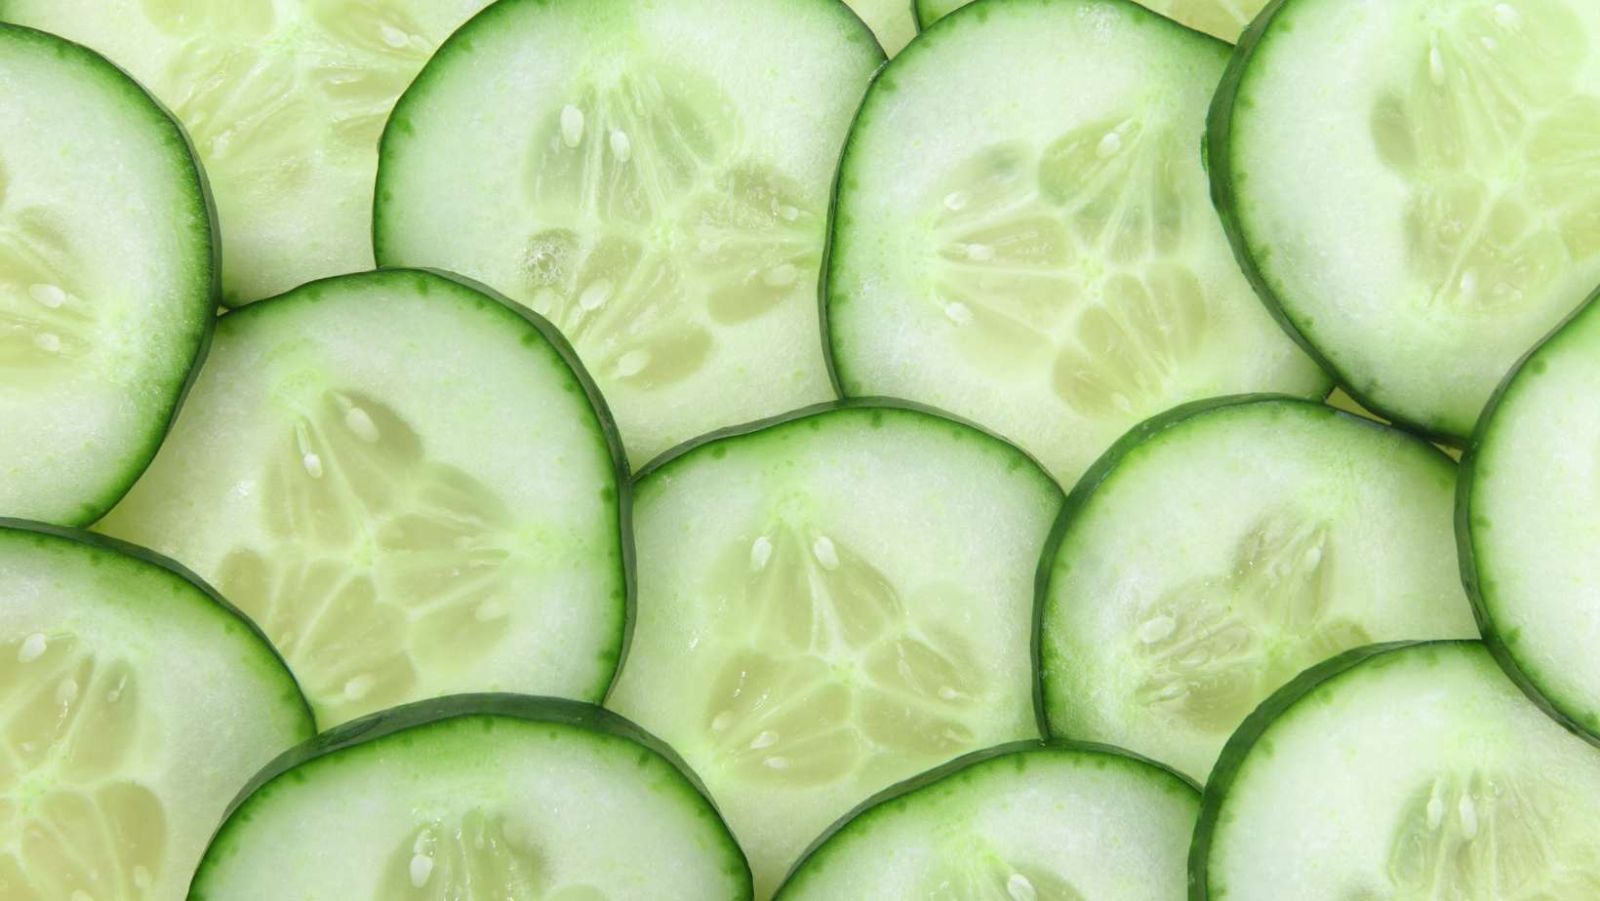 15 vertus santé du concombre que vous ignorez (minceur, anti-cancer, beauté...)